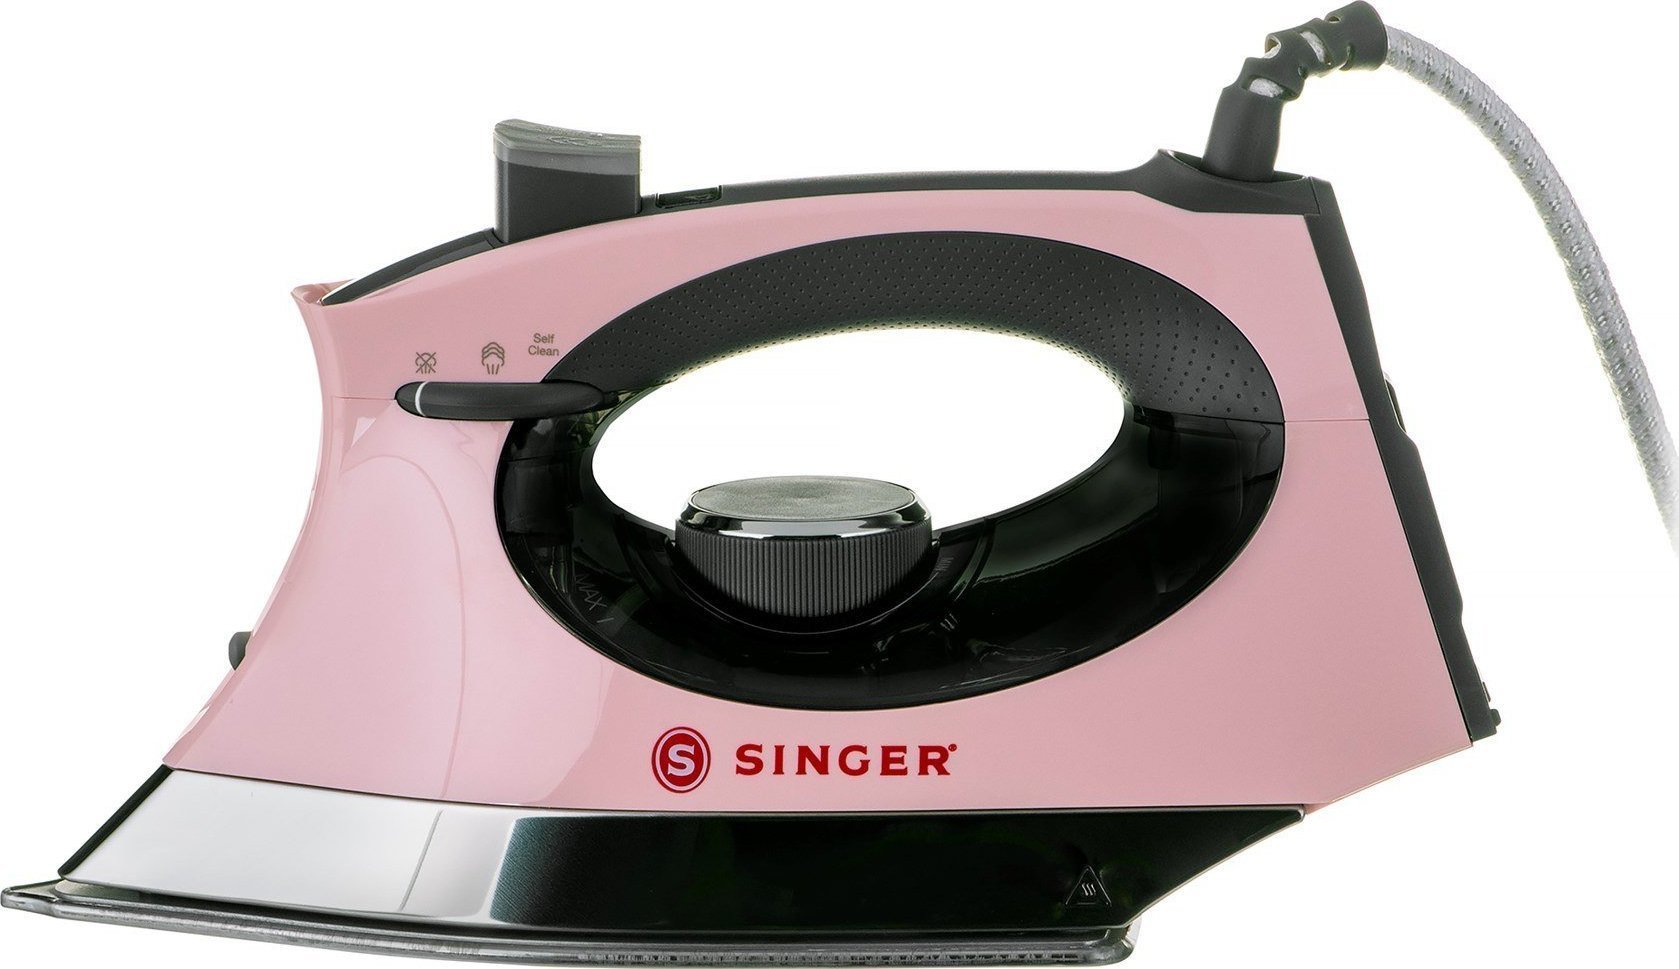 Żelazko Singer Żelazko parowe SINGER SteamCraft 2600 W różowo-szary